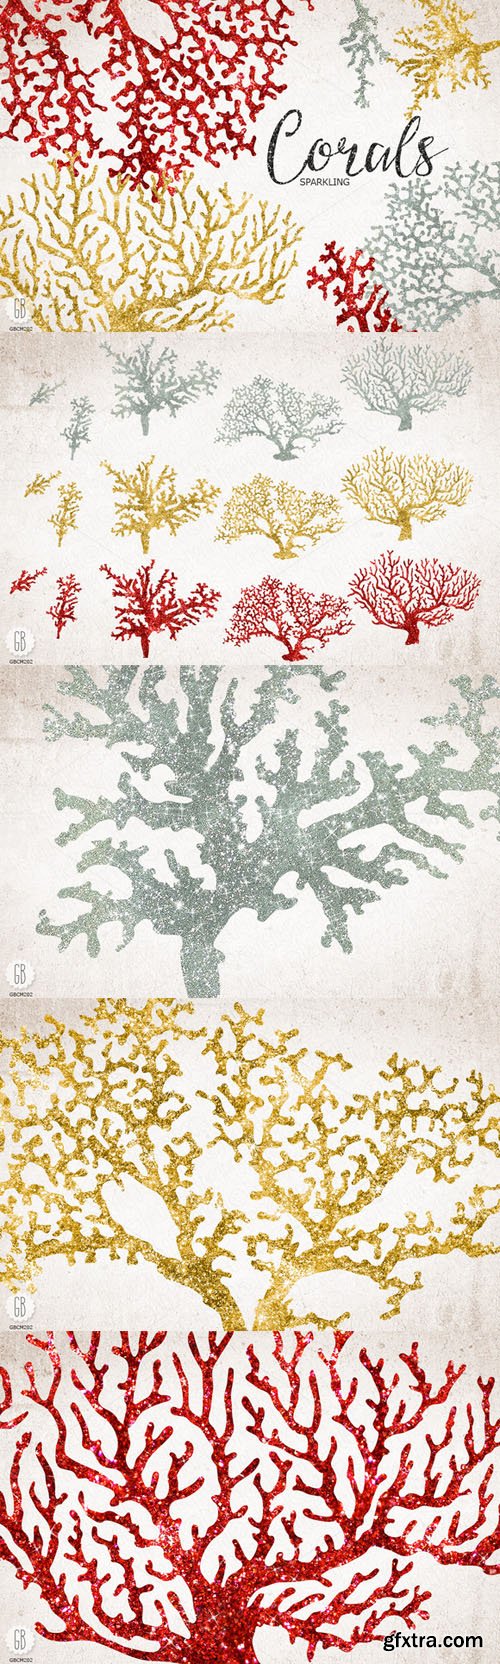 Sparkling corals, sea life clip art - CM 126340